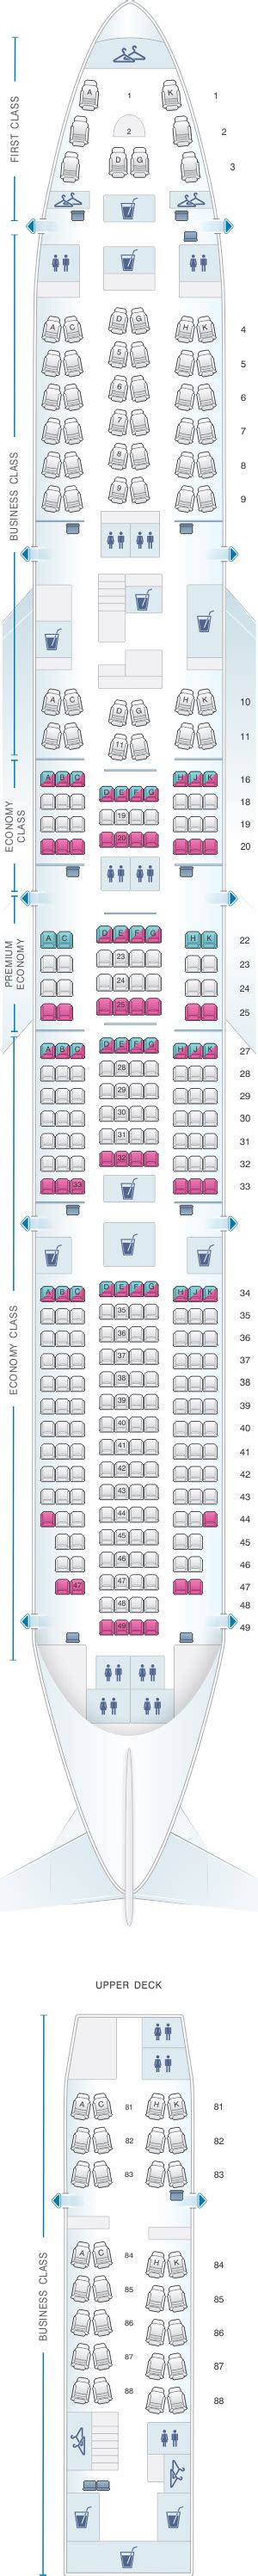 Lufthansa 747 8 Seat Map Premium Economy Two Birds Home